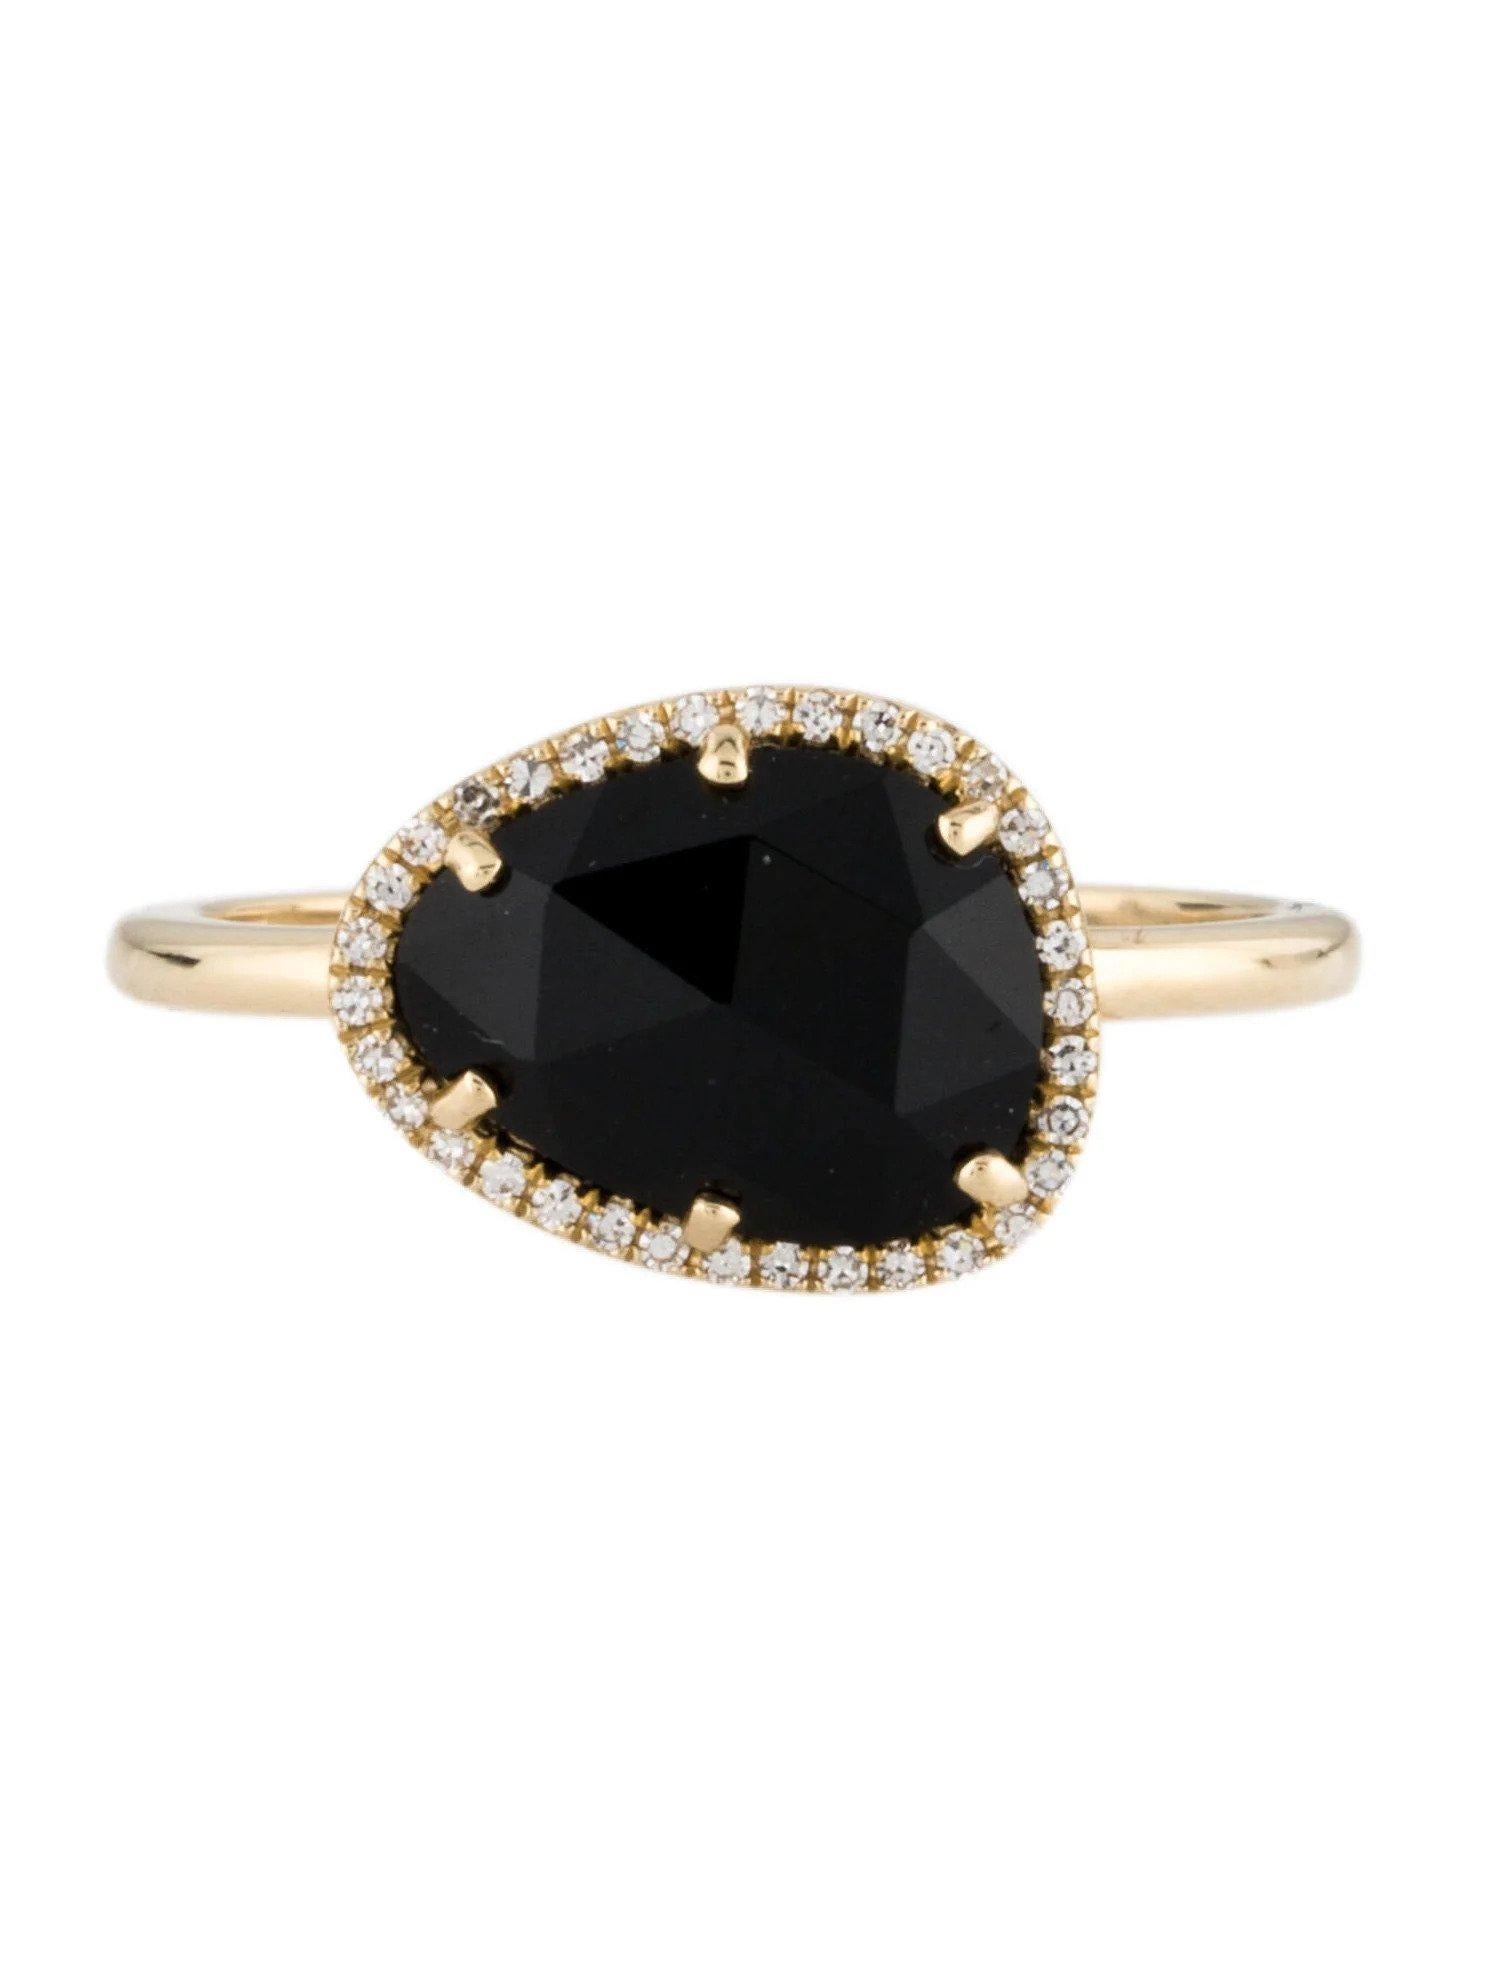 Cette bague en onyx et diamants est un accessoire étonnant et intemporel qui peut ajouter une touche de glamour et de sophistication à n'importe quelle tenue. 

Cette bague comporte un onyx de 1,56 carat (12 x 9 MM), avec un halo de diamants composé